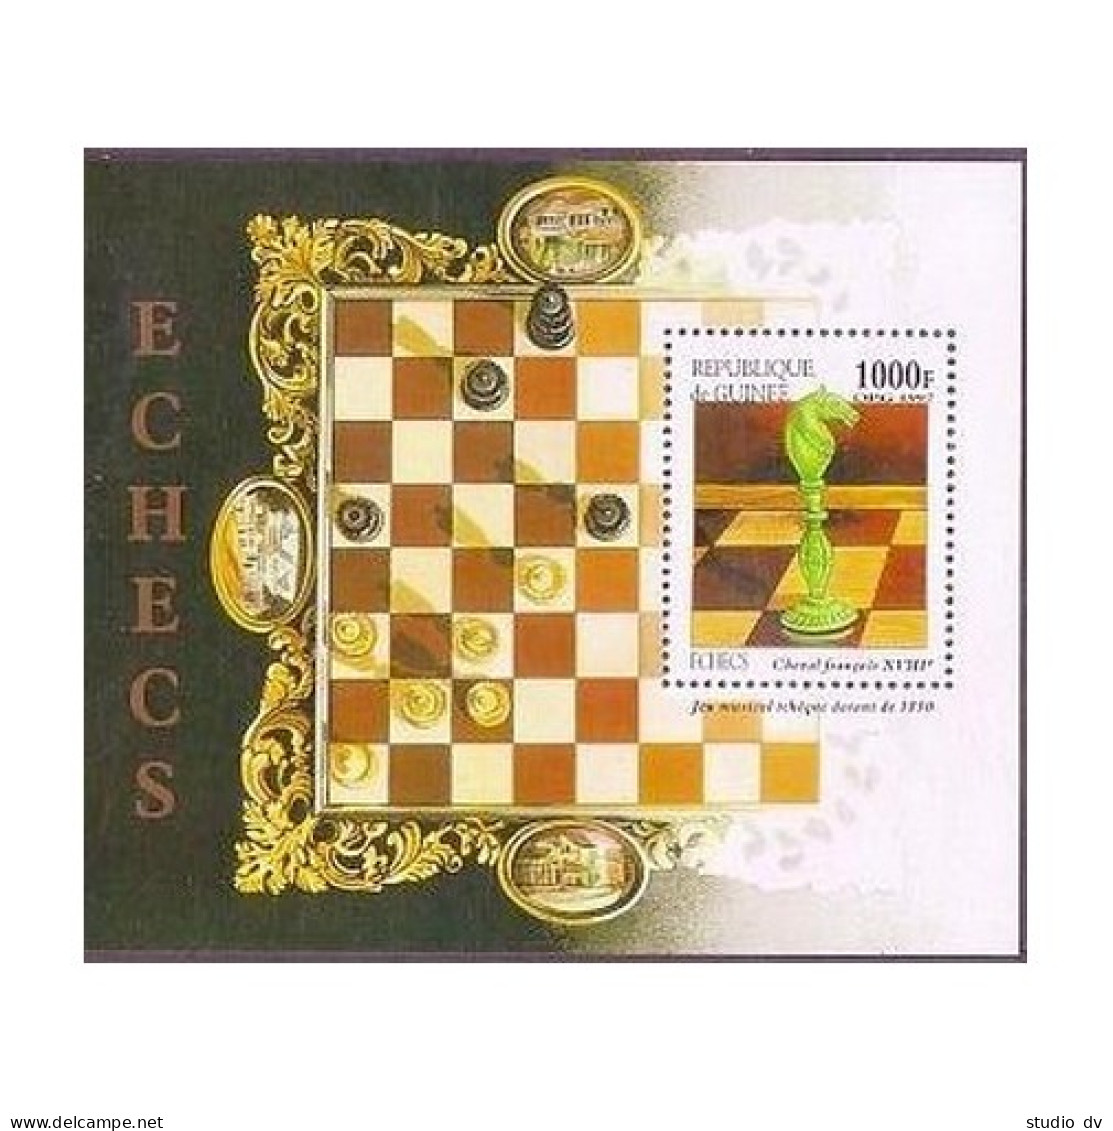 Guinea 1409A-1409F, 1409G, MNH. Chess Pieces, 1997. - Guinea (1958-...)